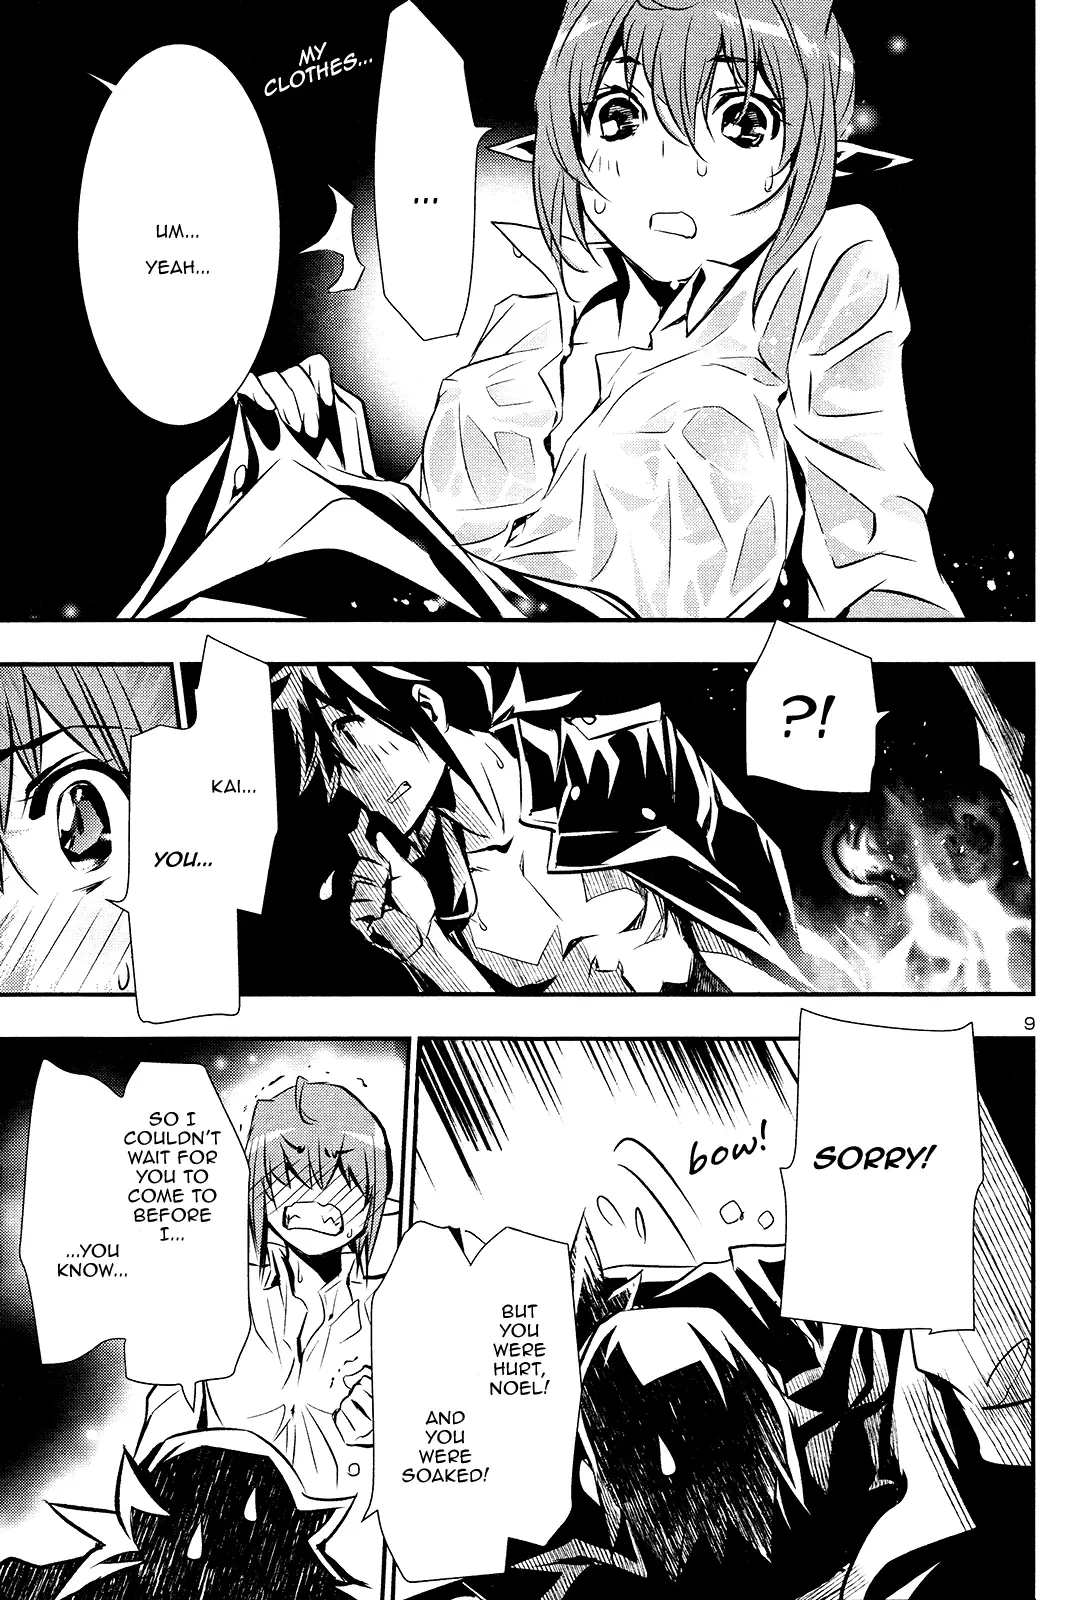 Shinju no Nectar - 35 page 9